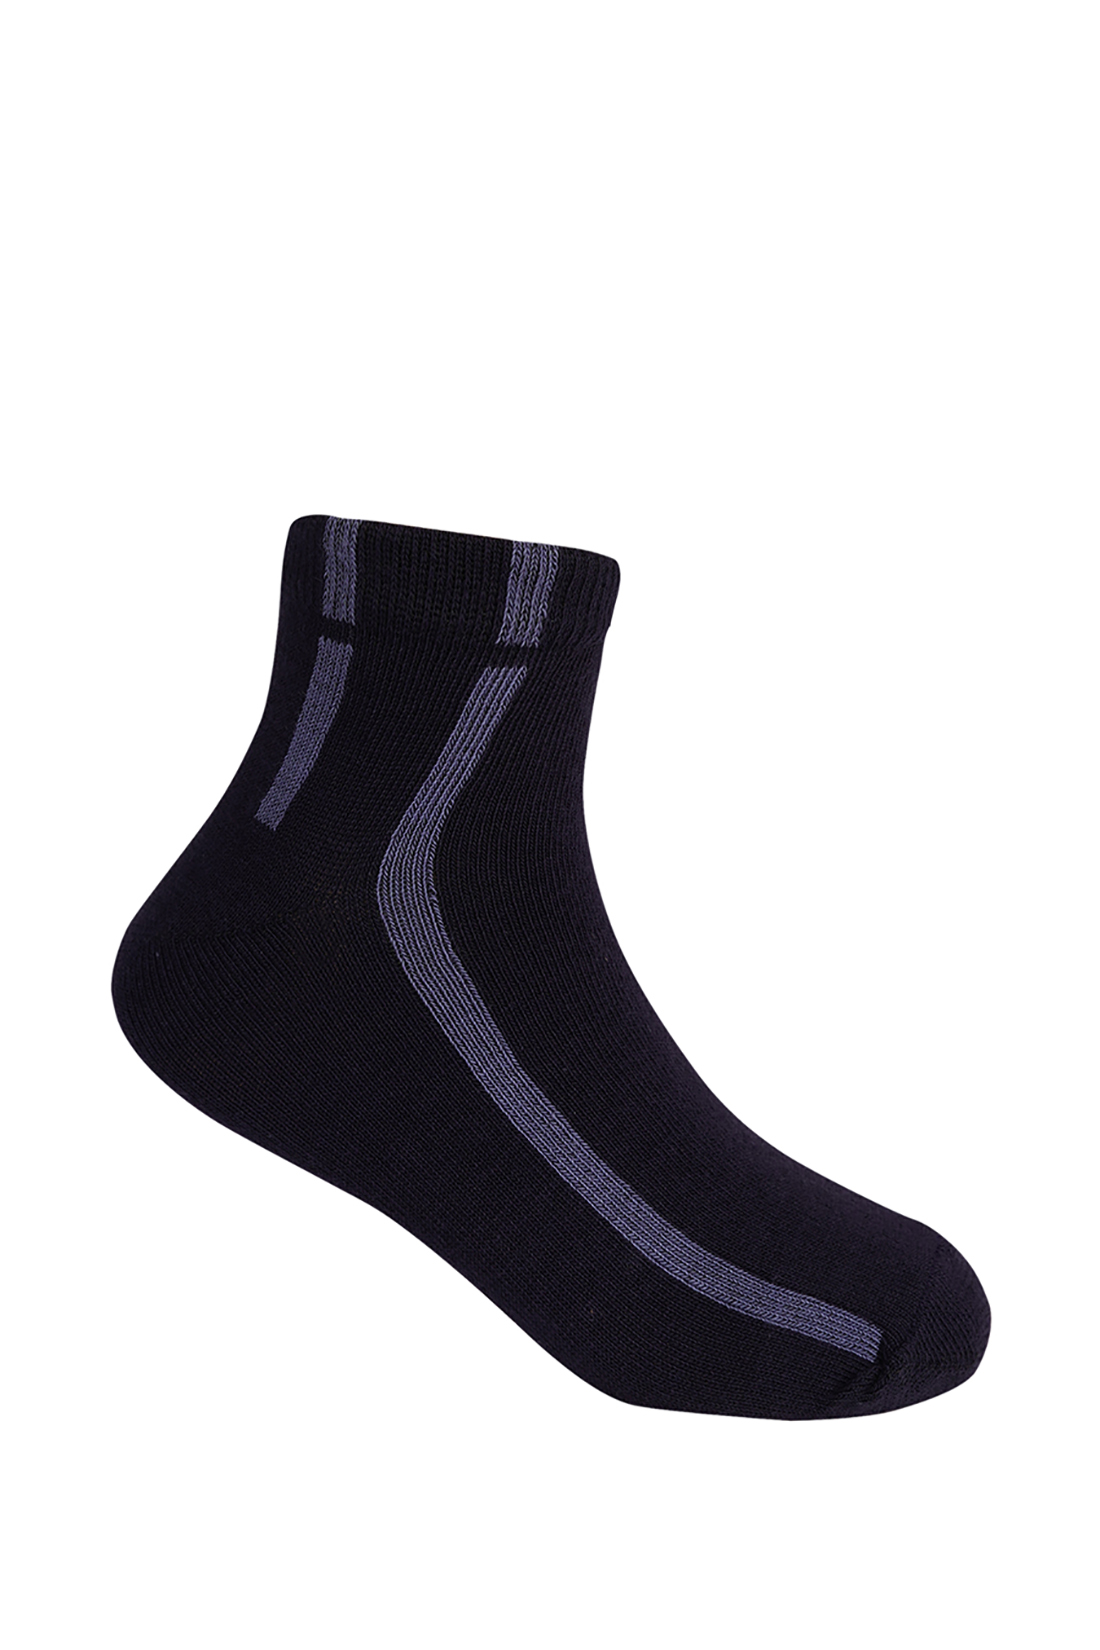 Носки для мальчика (арт. baon BK890005), размер 26/28, цвет синий